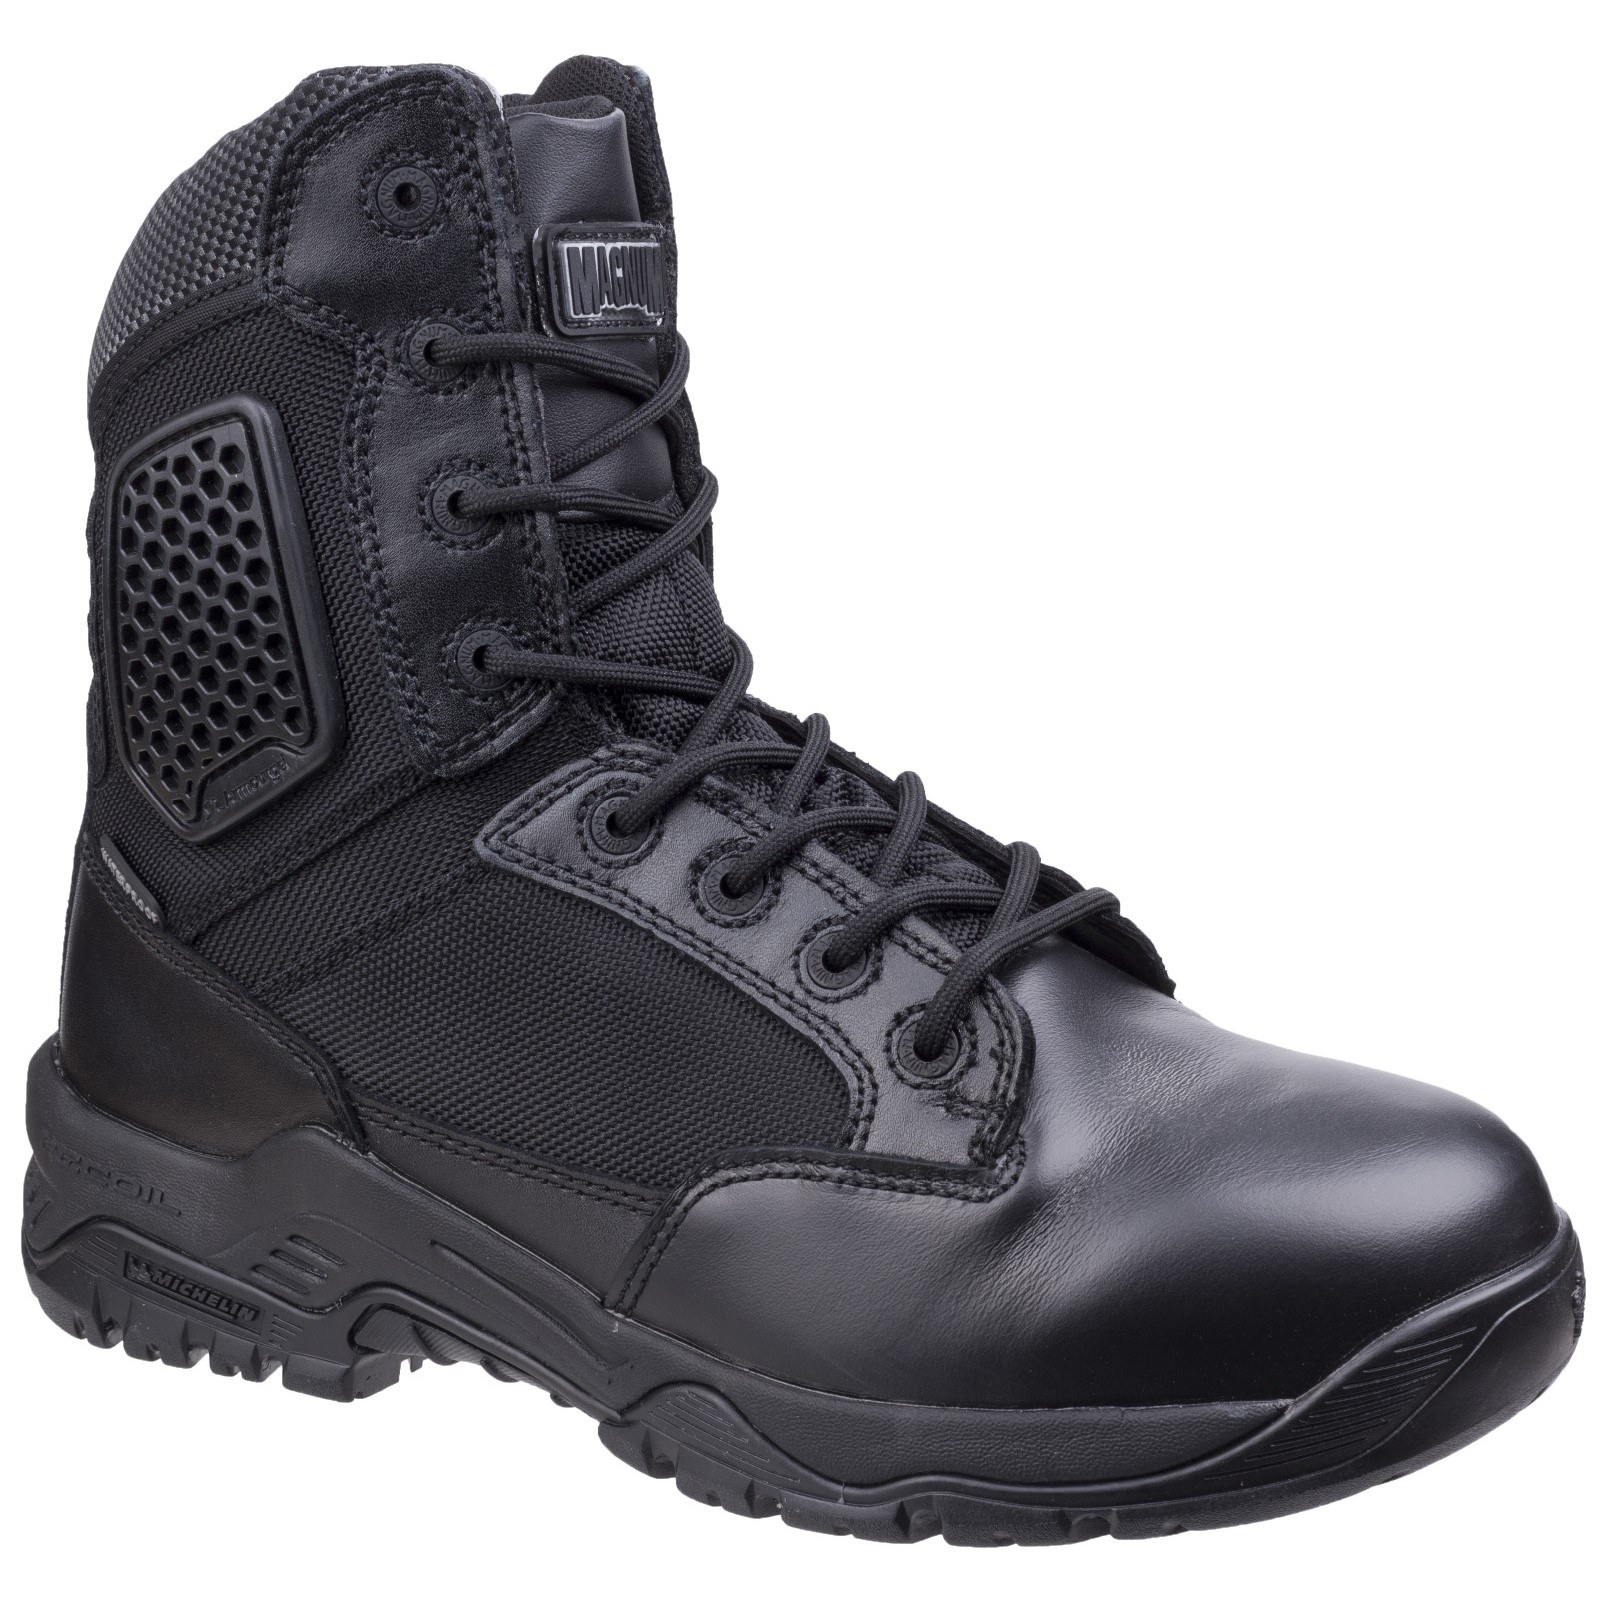 Strike Force 8.0 Waterproof Side-Zip Uniform Boots